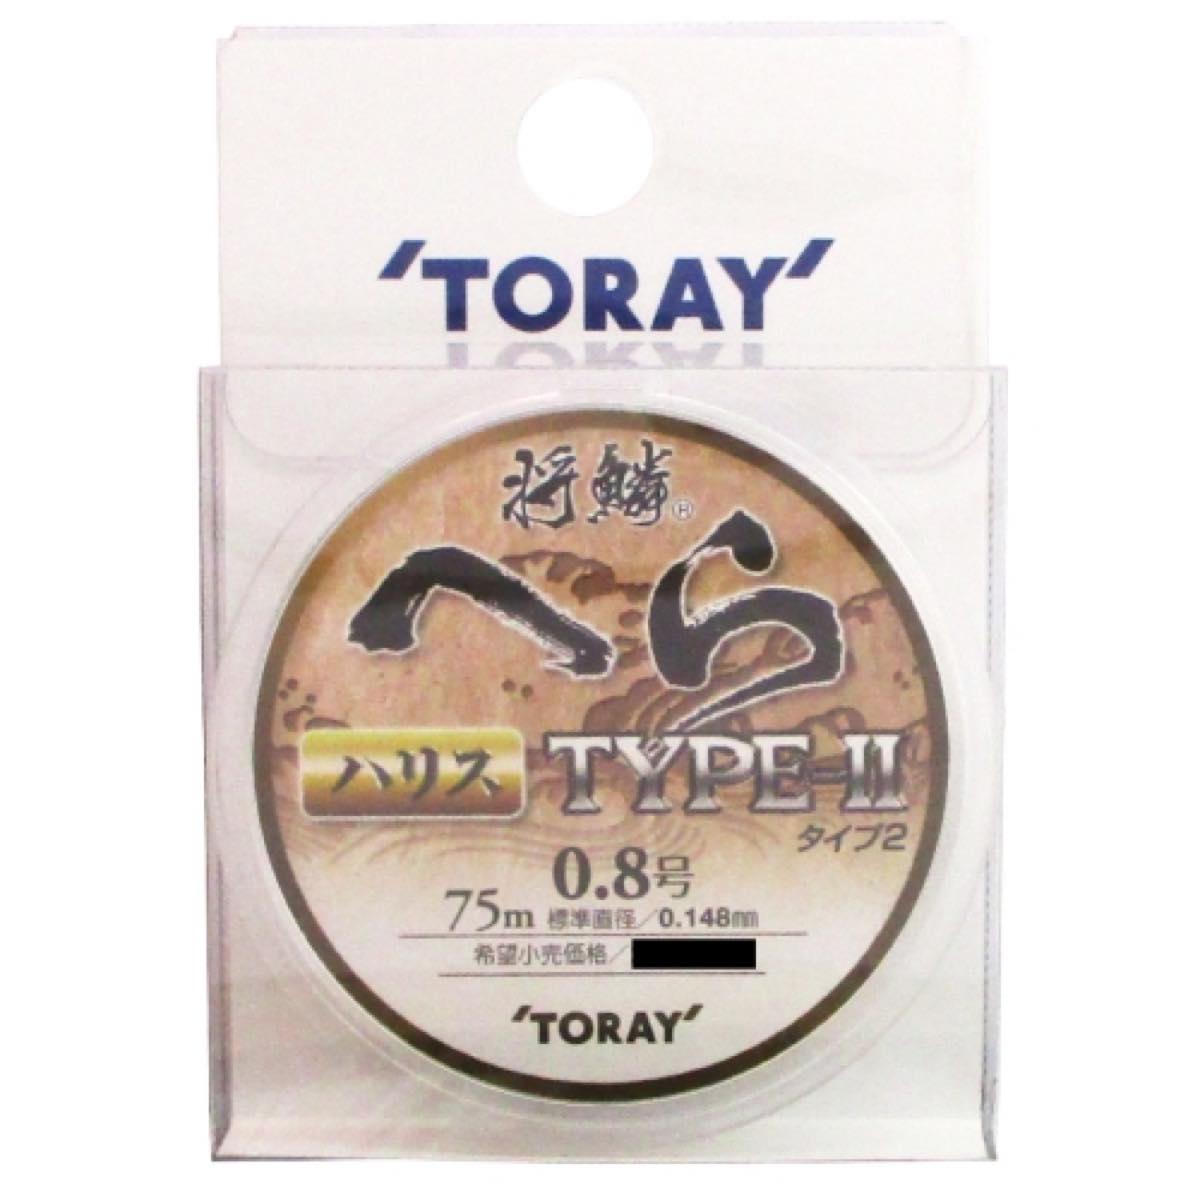 東レ(TORAY) 将麟へら TYPE-2 ハリス 75m 0.8号 ネコポス(メール便)対象商品